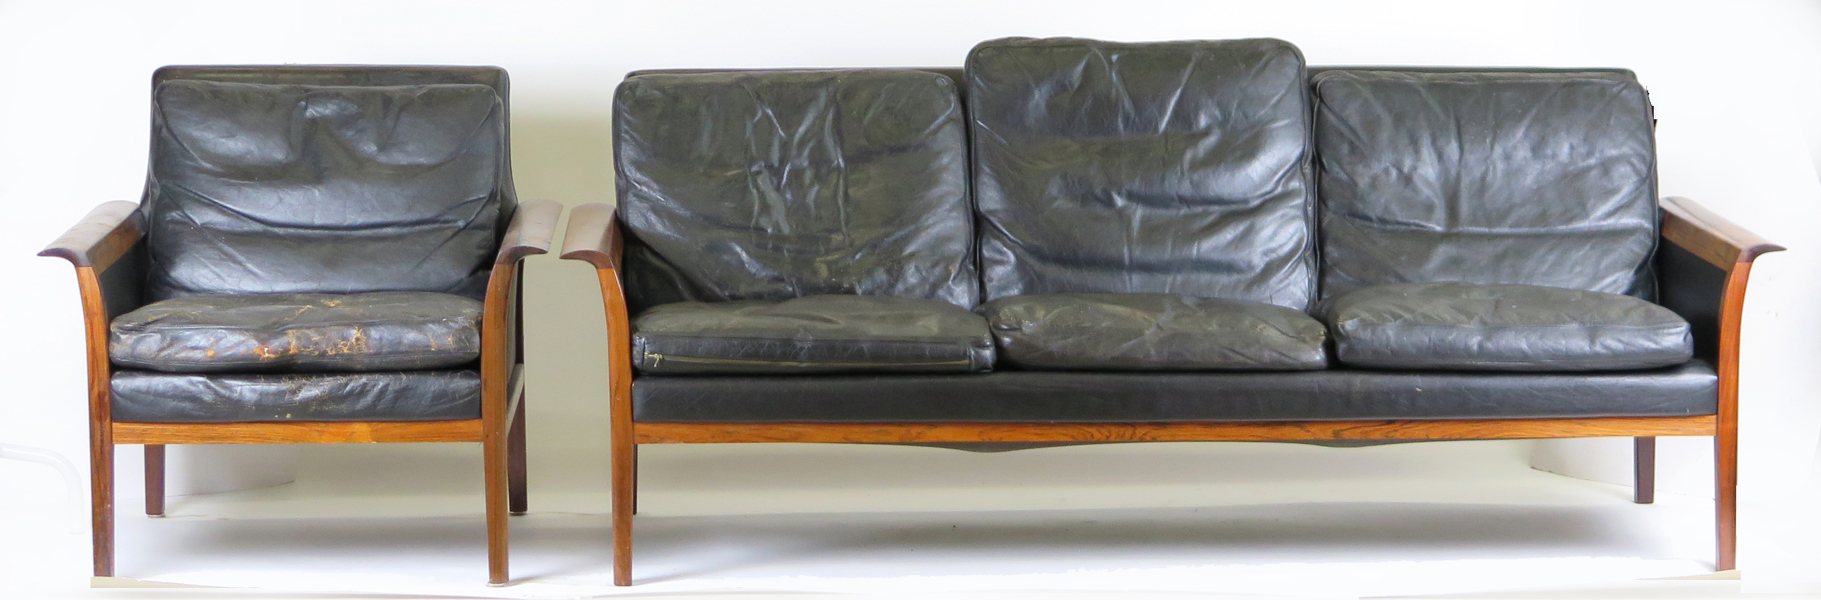 Kayser, Fredrik för Vatne Möbler, soffa samt fåtölj, palisander med svart läderklädsel, modellnummer 965 respektive 935, 1960-tal, _26057a_8db0b758d33dd76_lg.jpeg